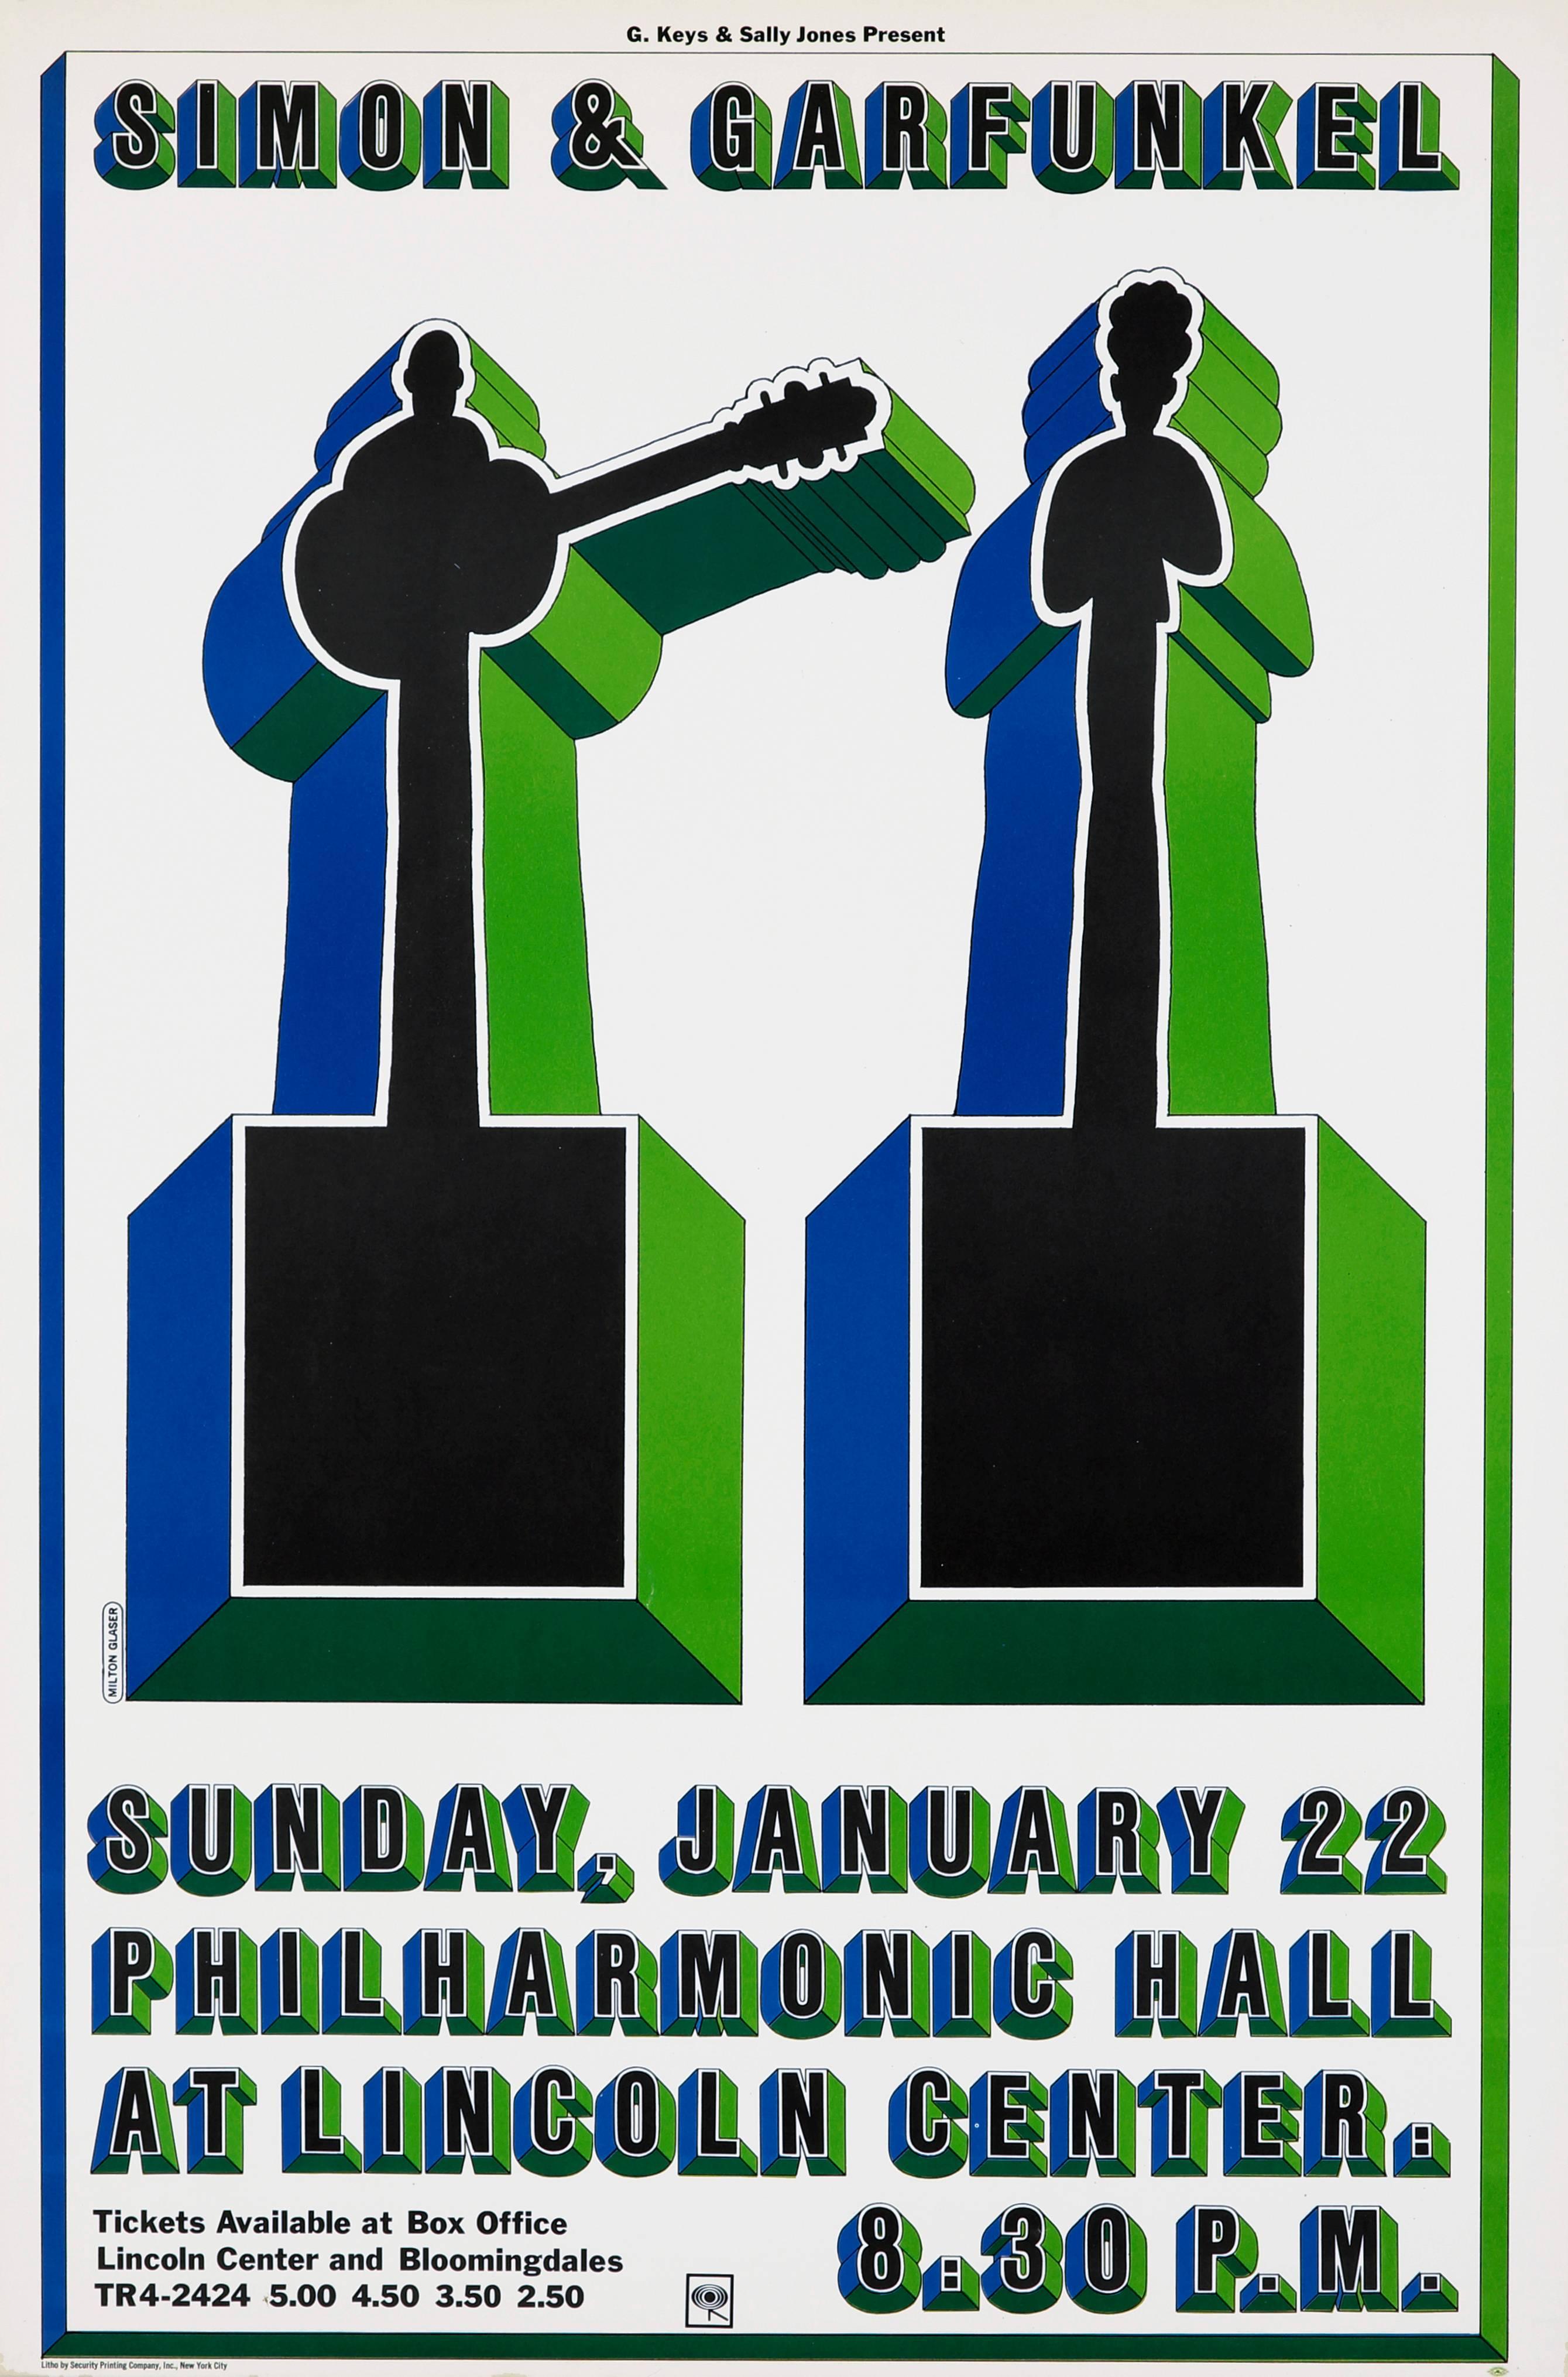 Vintage Original Milton Glaser, affiche du concert de Simon and Garfunkel, New York, 1967 :
Le 22 janvier 1967, Simon & Januari se produisent au Philharmonic Hall du Lincoln Center à New York. Pour l'affiche, Milton Glaser a placé les icônes